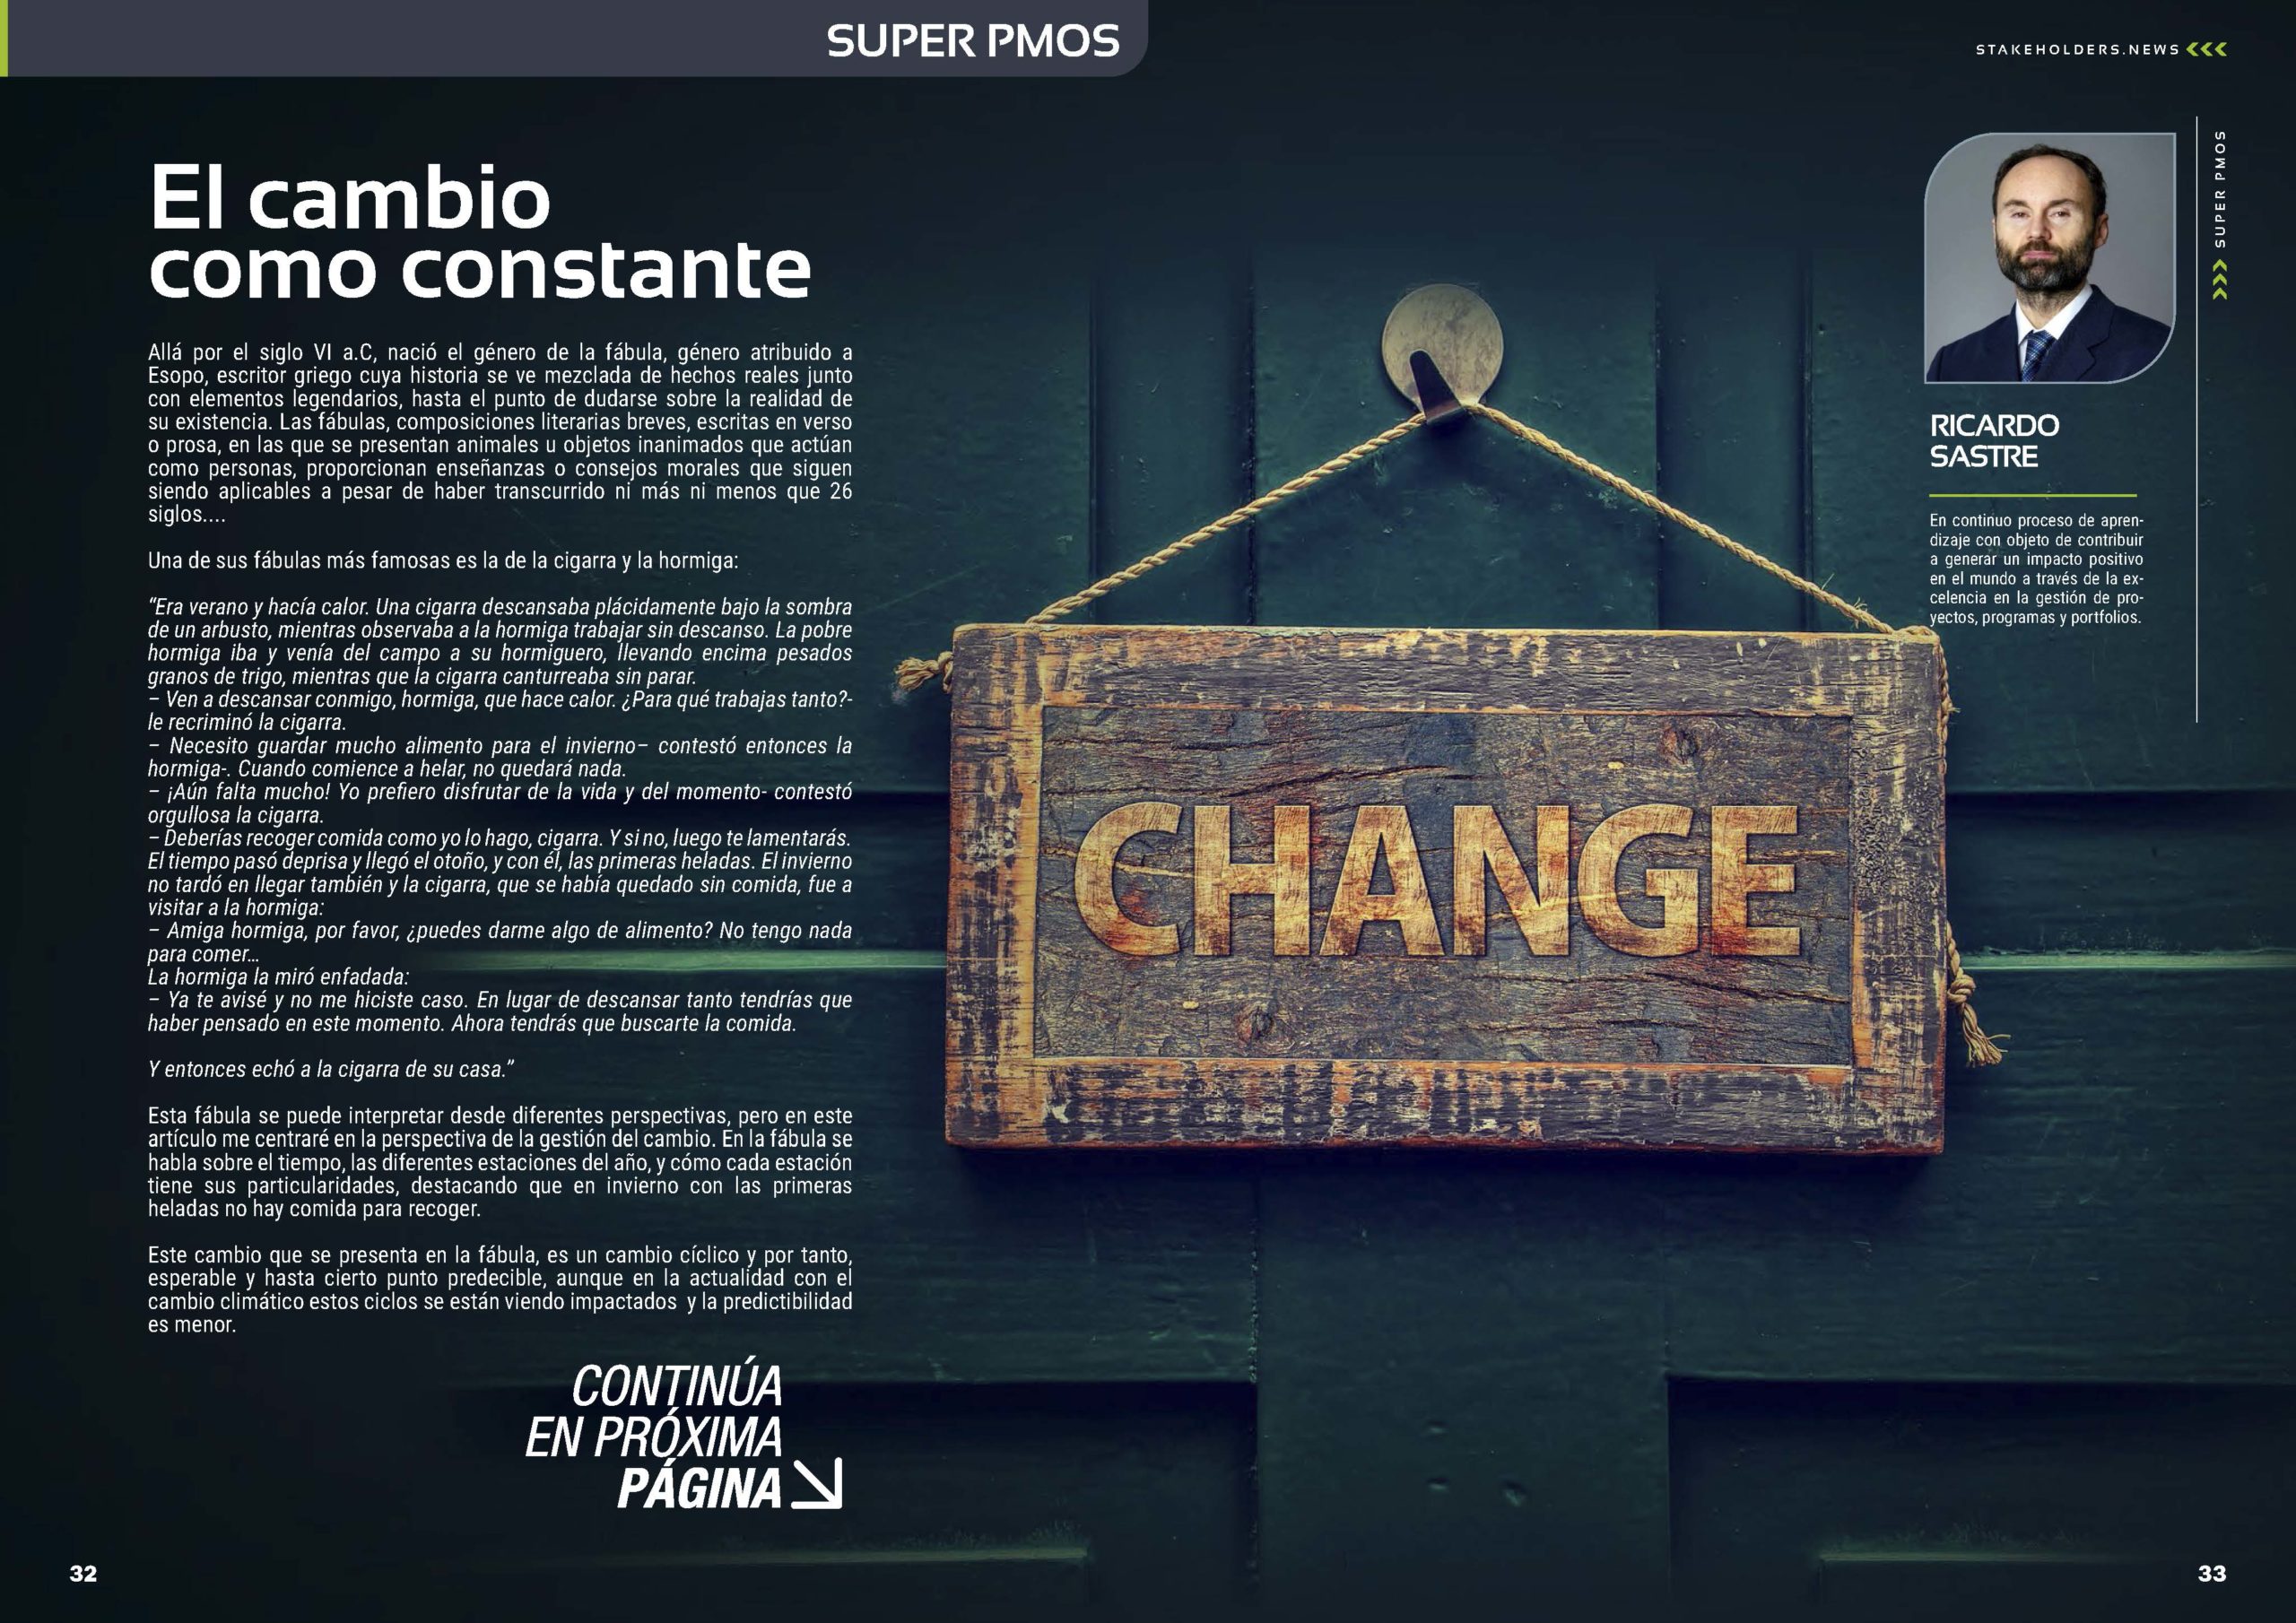 Articulo "El cambio constante" de Ricardo Sastre en la Sección "Super PMOs" de la Revista Stakeholders.news